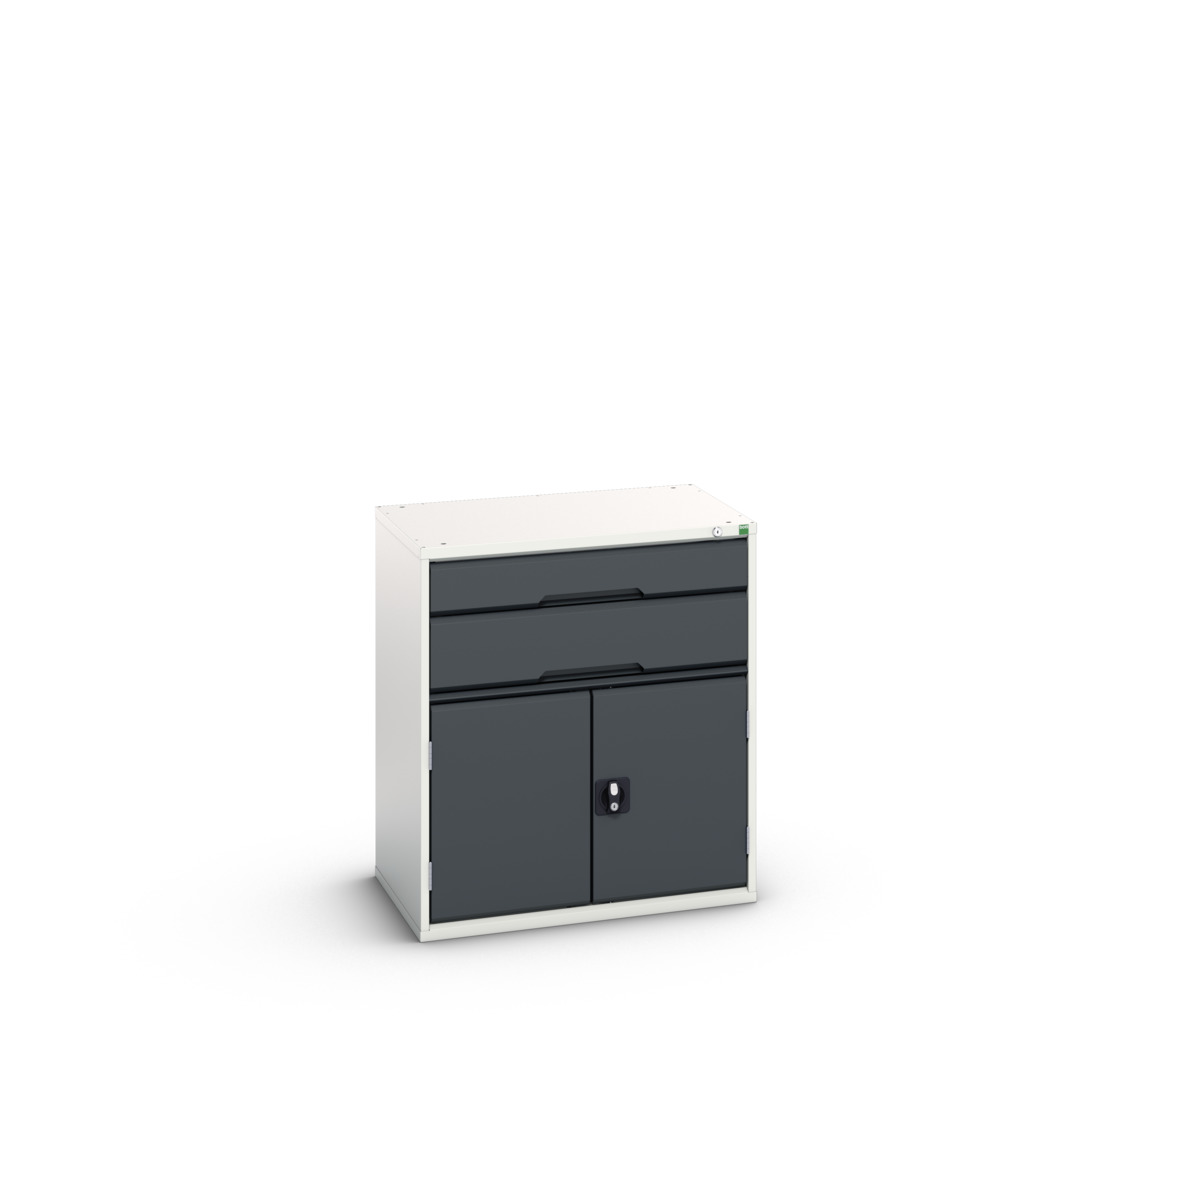 16925437.19 - verso drawer-door cabinet